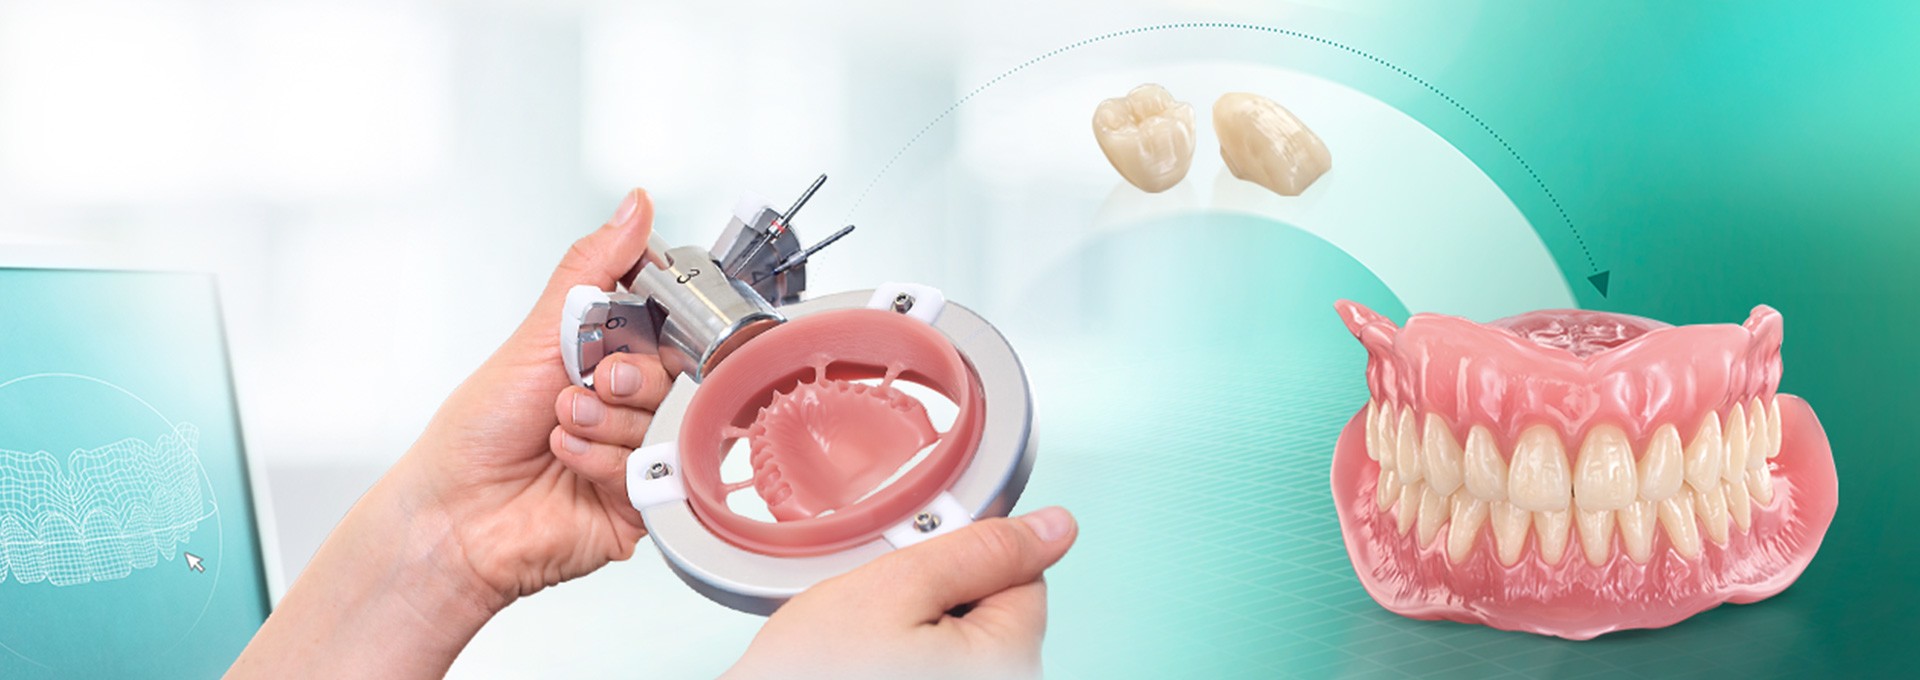 Gefräste Prothesenbasis und eine komplette digital hergestellte Prothese aus VITA VIONIC Material